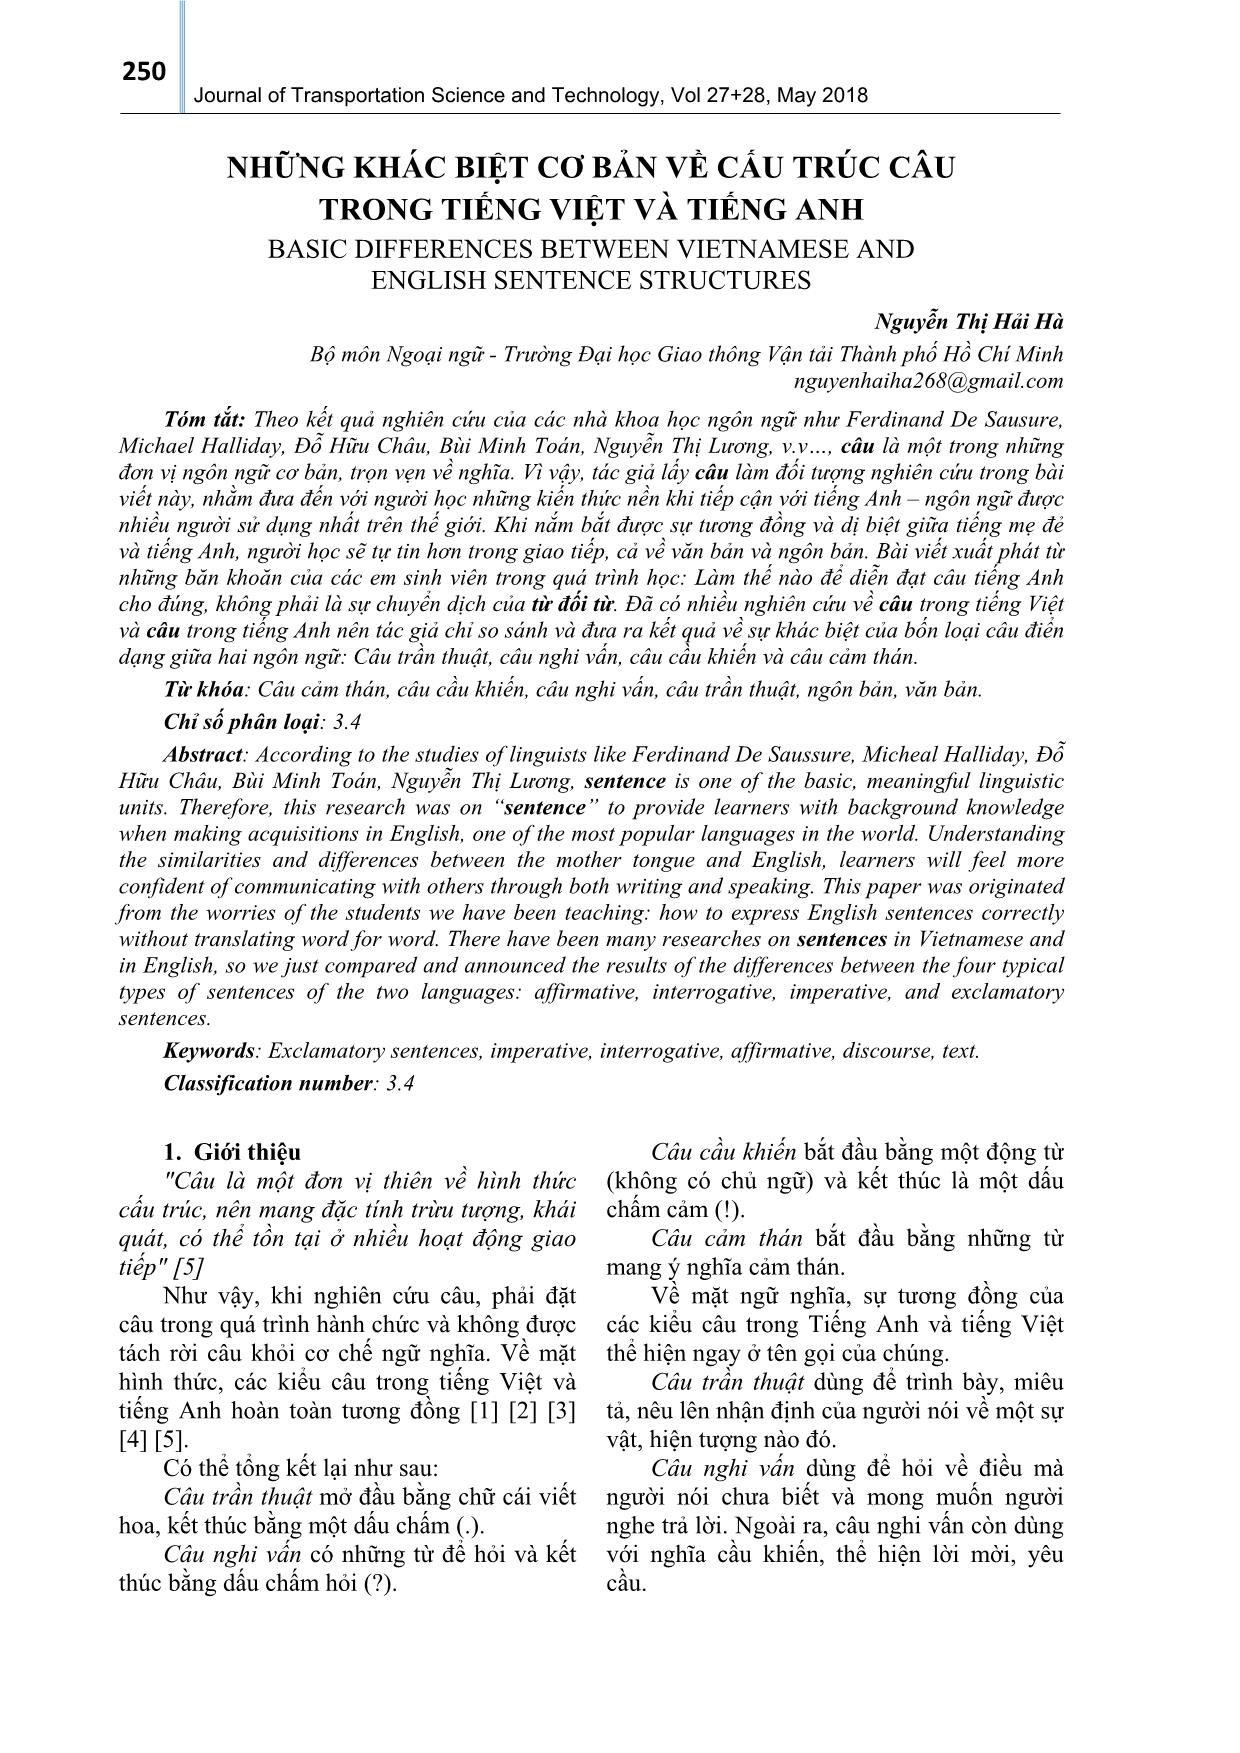 Những khác biệt cơ bản về cấu trúc câu trong tiếng Việt và tiếng Anh trang 1